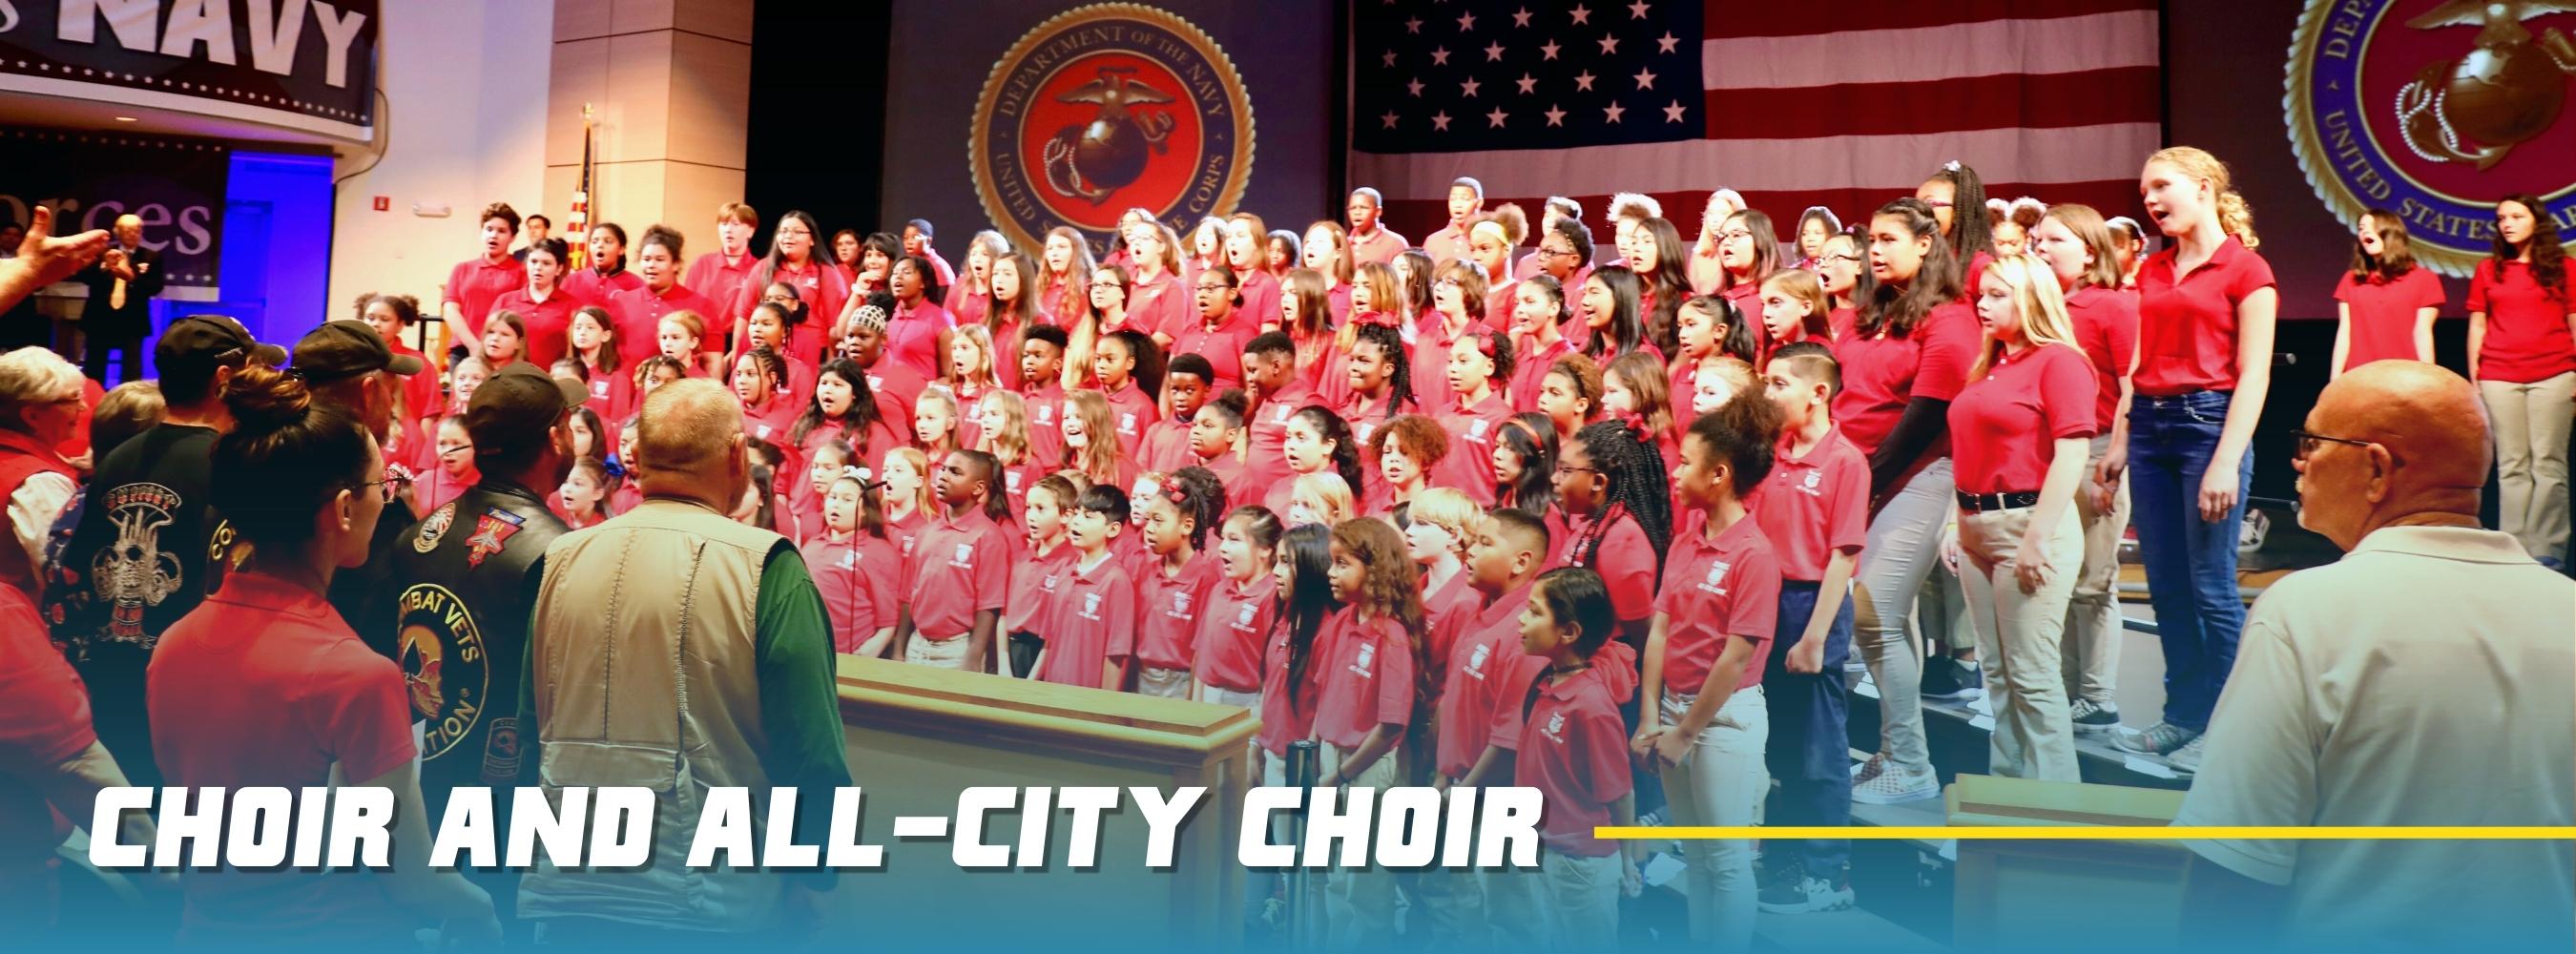 Choir and All-City Choir